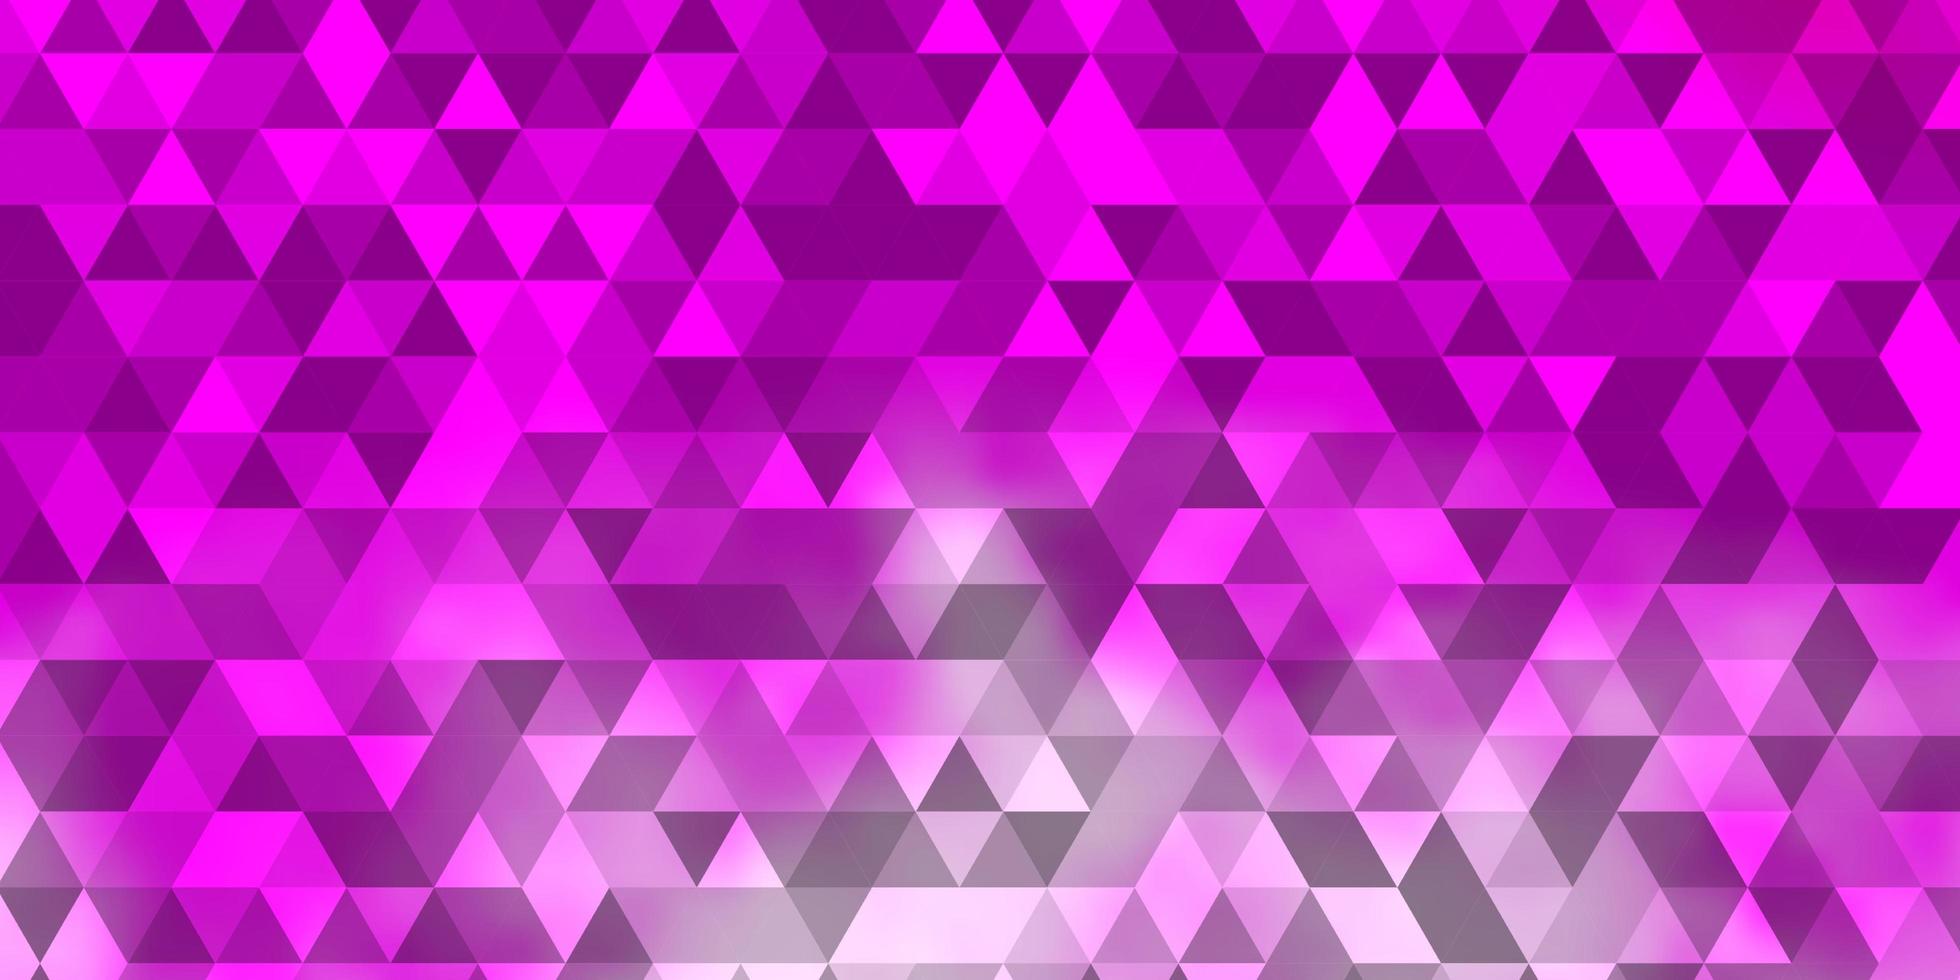 ljusrosa vektormall med kristaller, trianglar. vektor